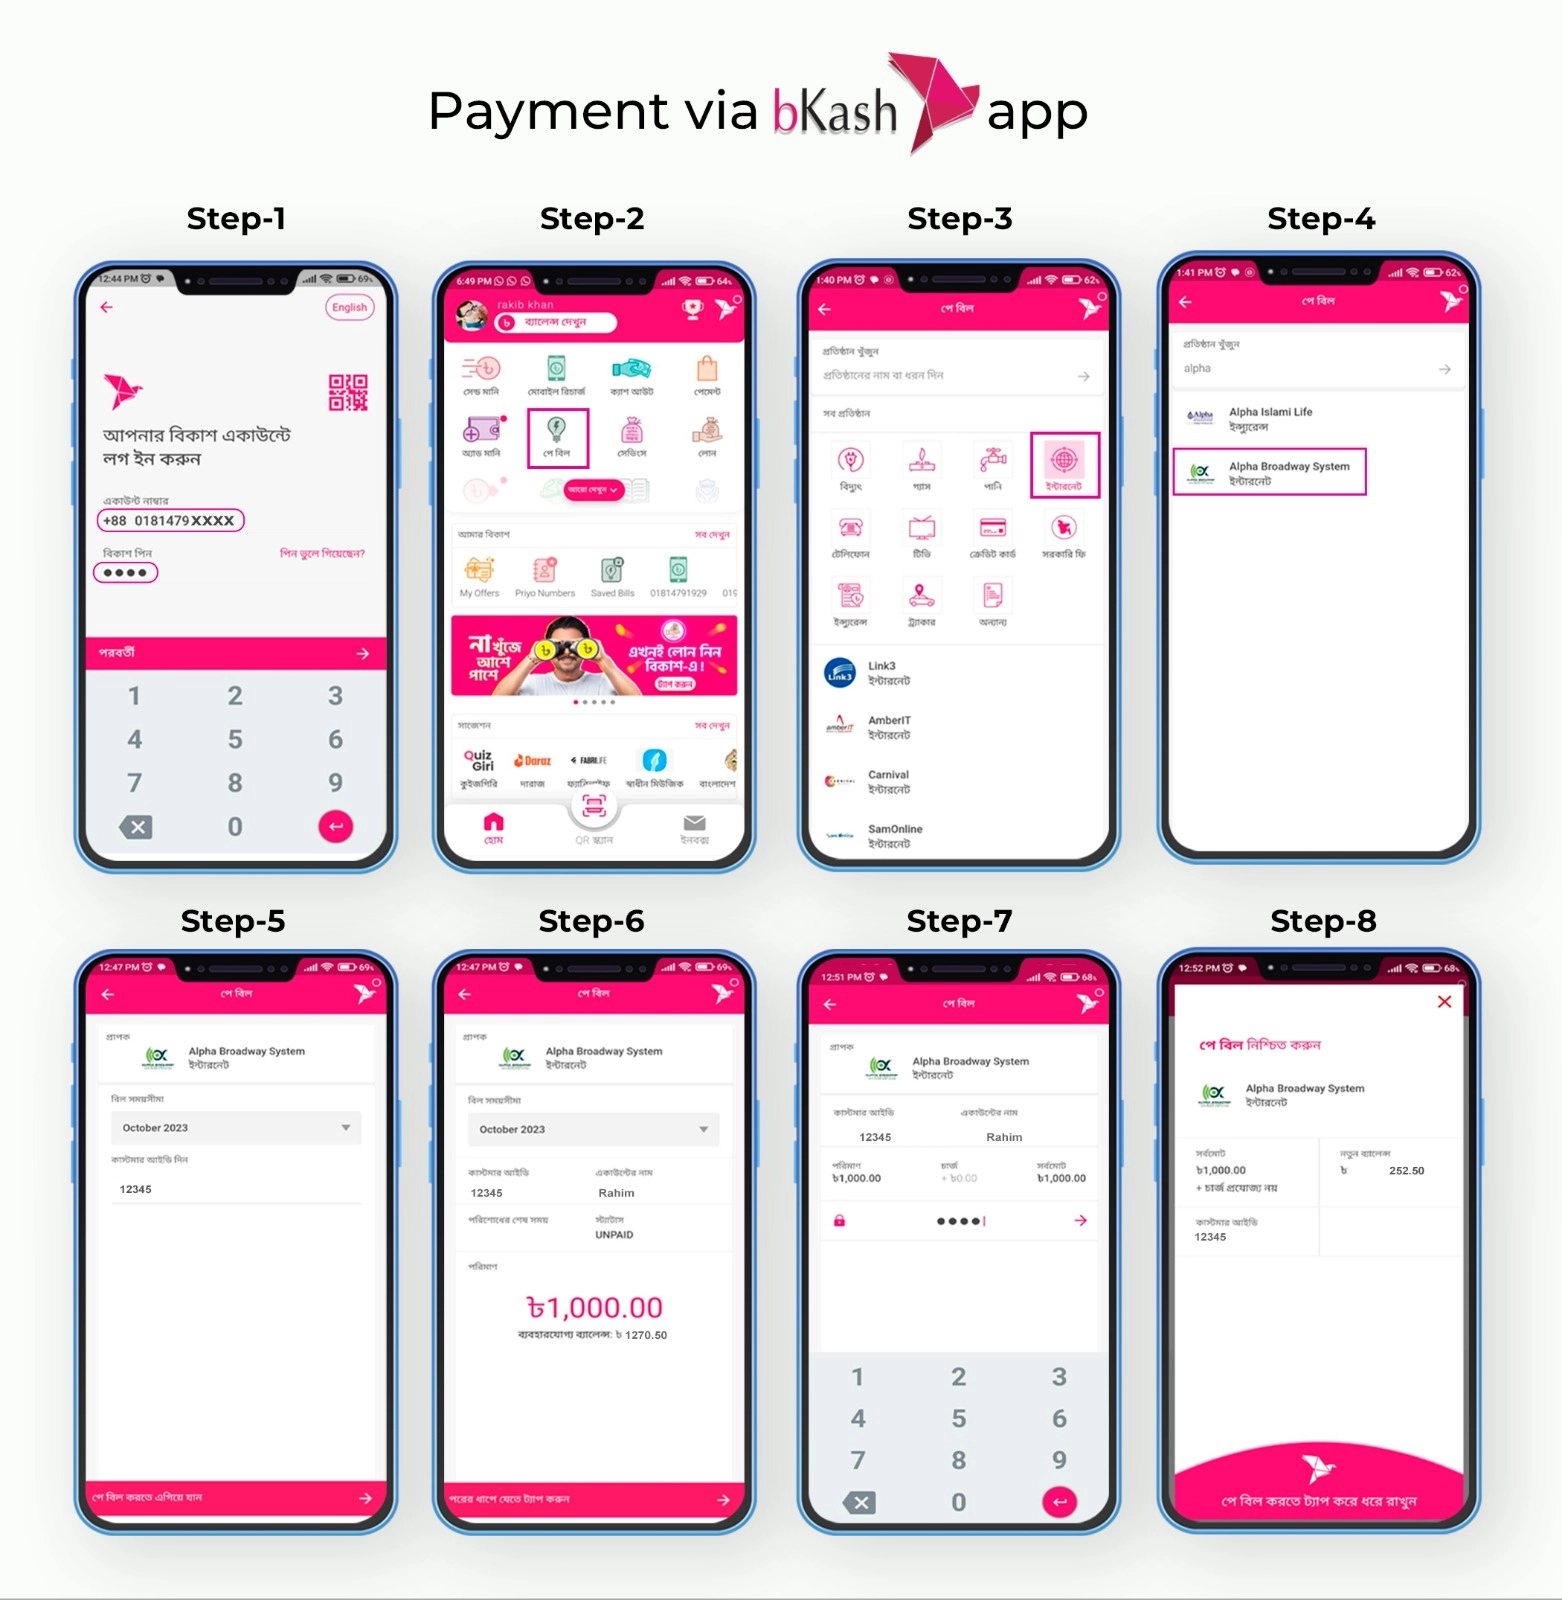 Payment via bkash app